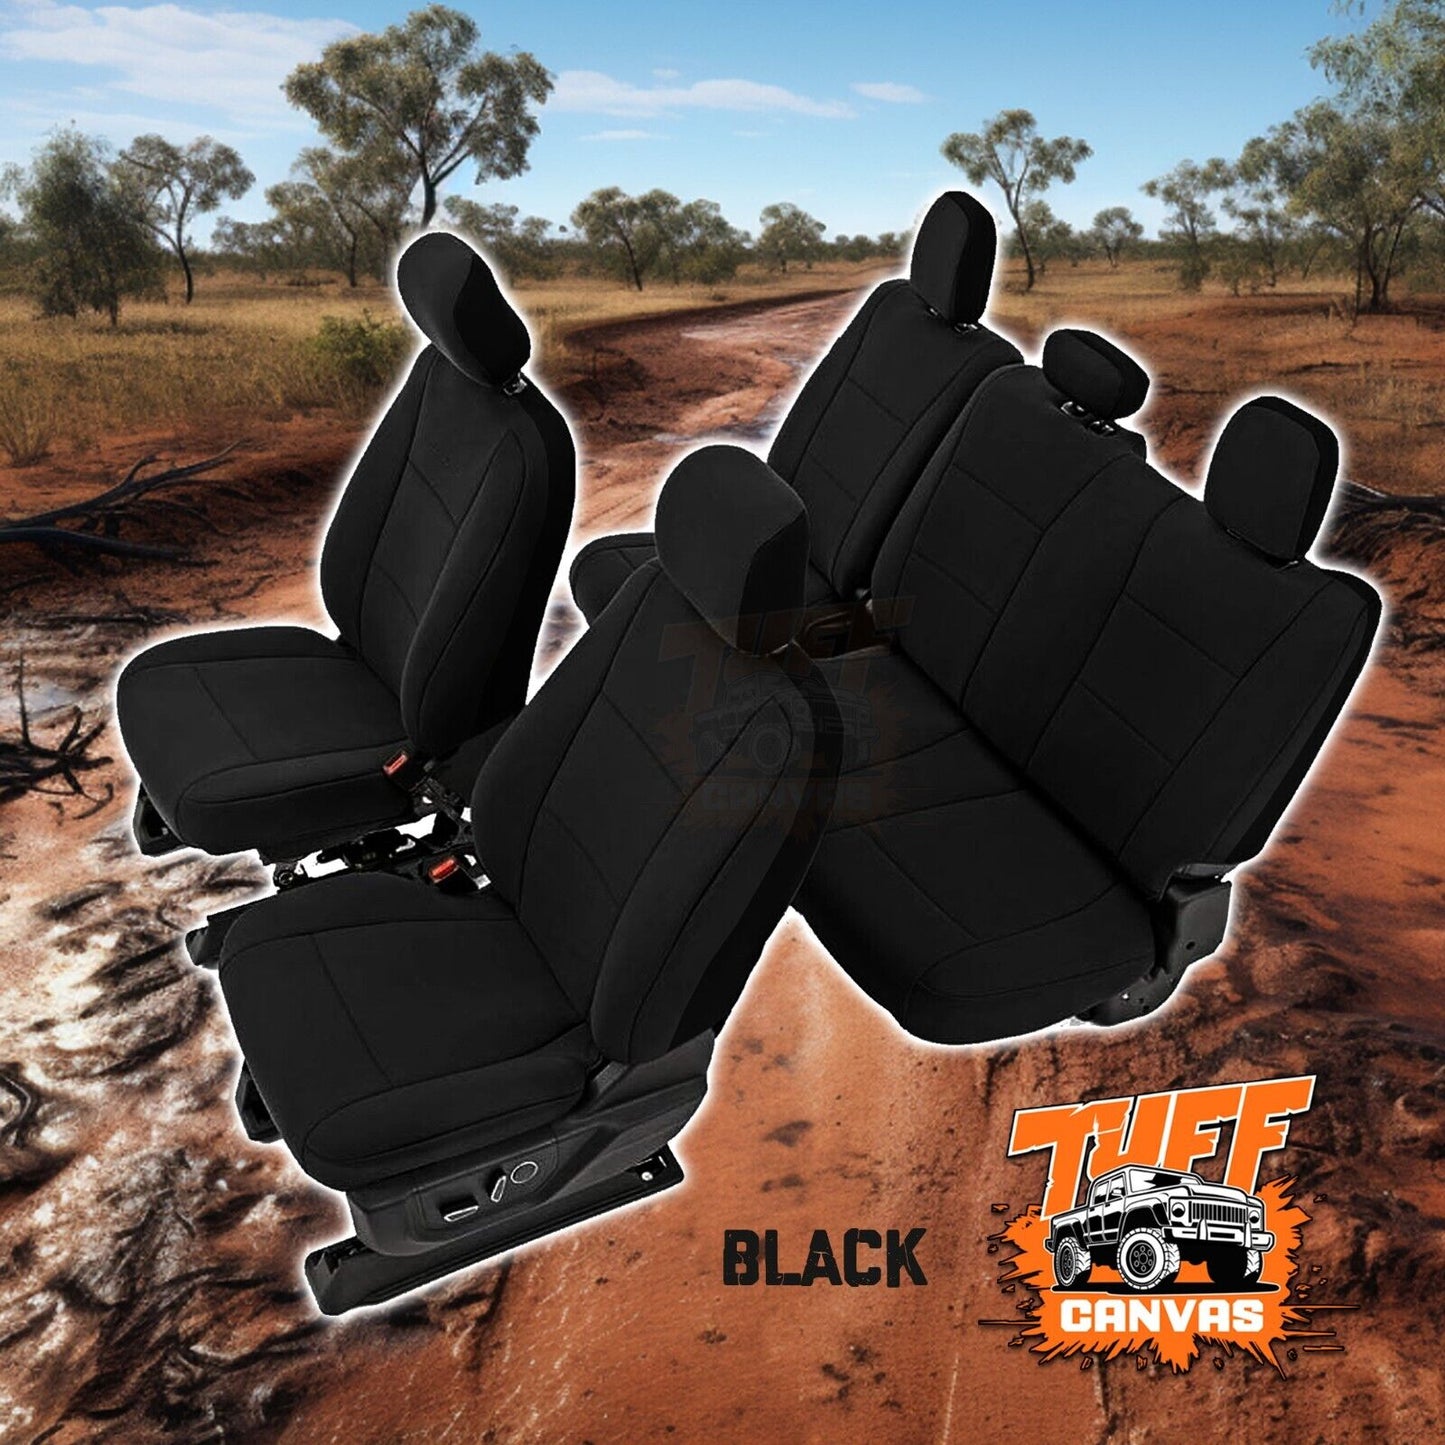 Black Tuff Canvas S2 Seat Covers 2 Rows For Mitsubishi Triton MR GLX GLR GLS 1/2019-2023